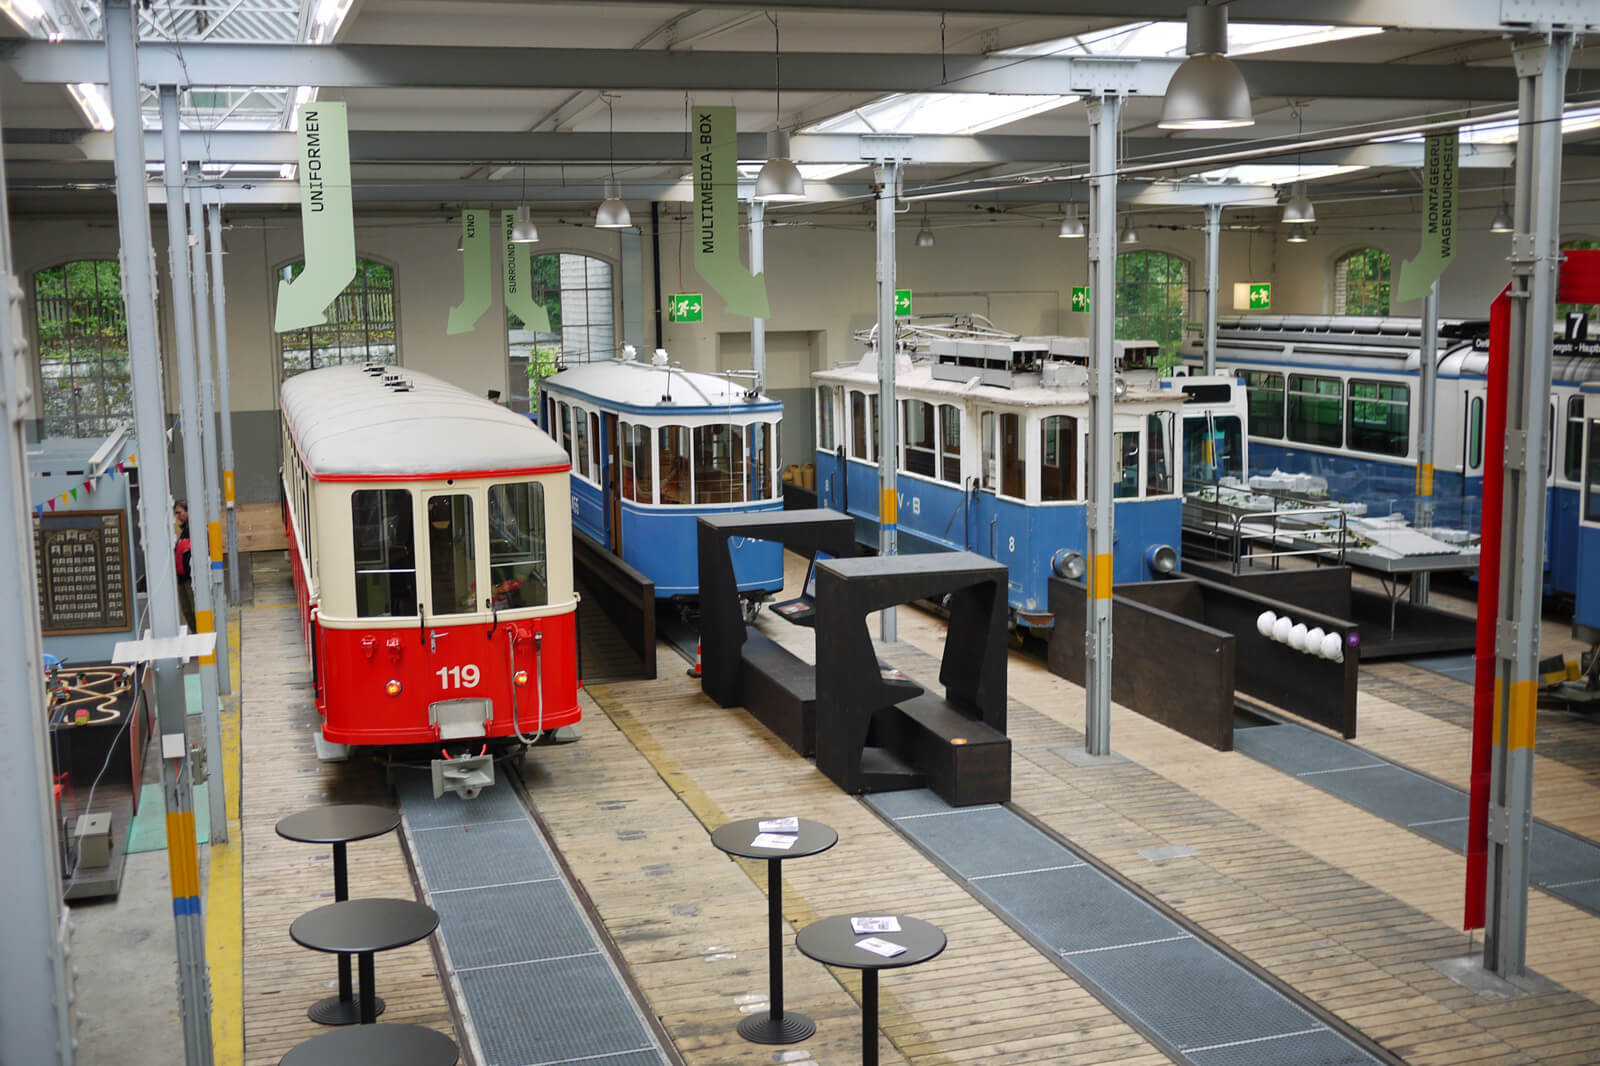 Things to do in Zurich - Zurich Tram Museum